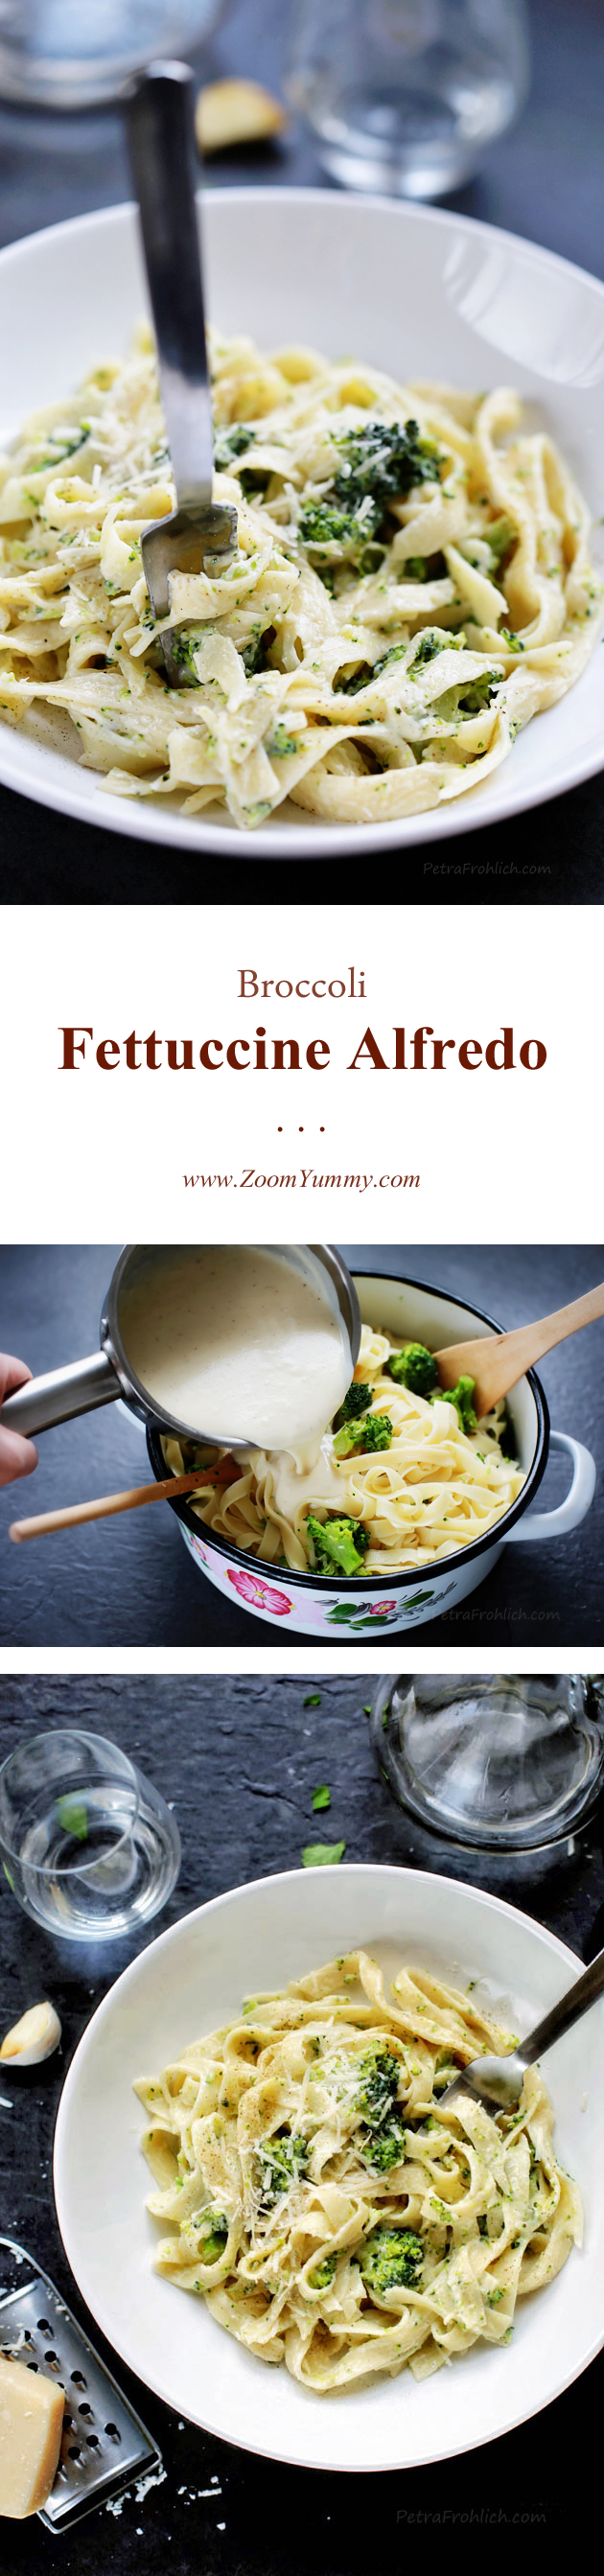 broccoli-fettuccine-alfredo